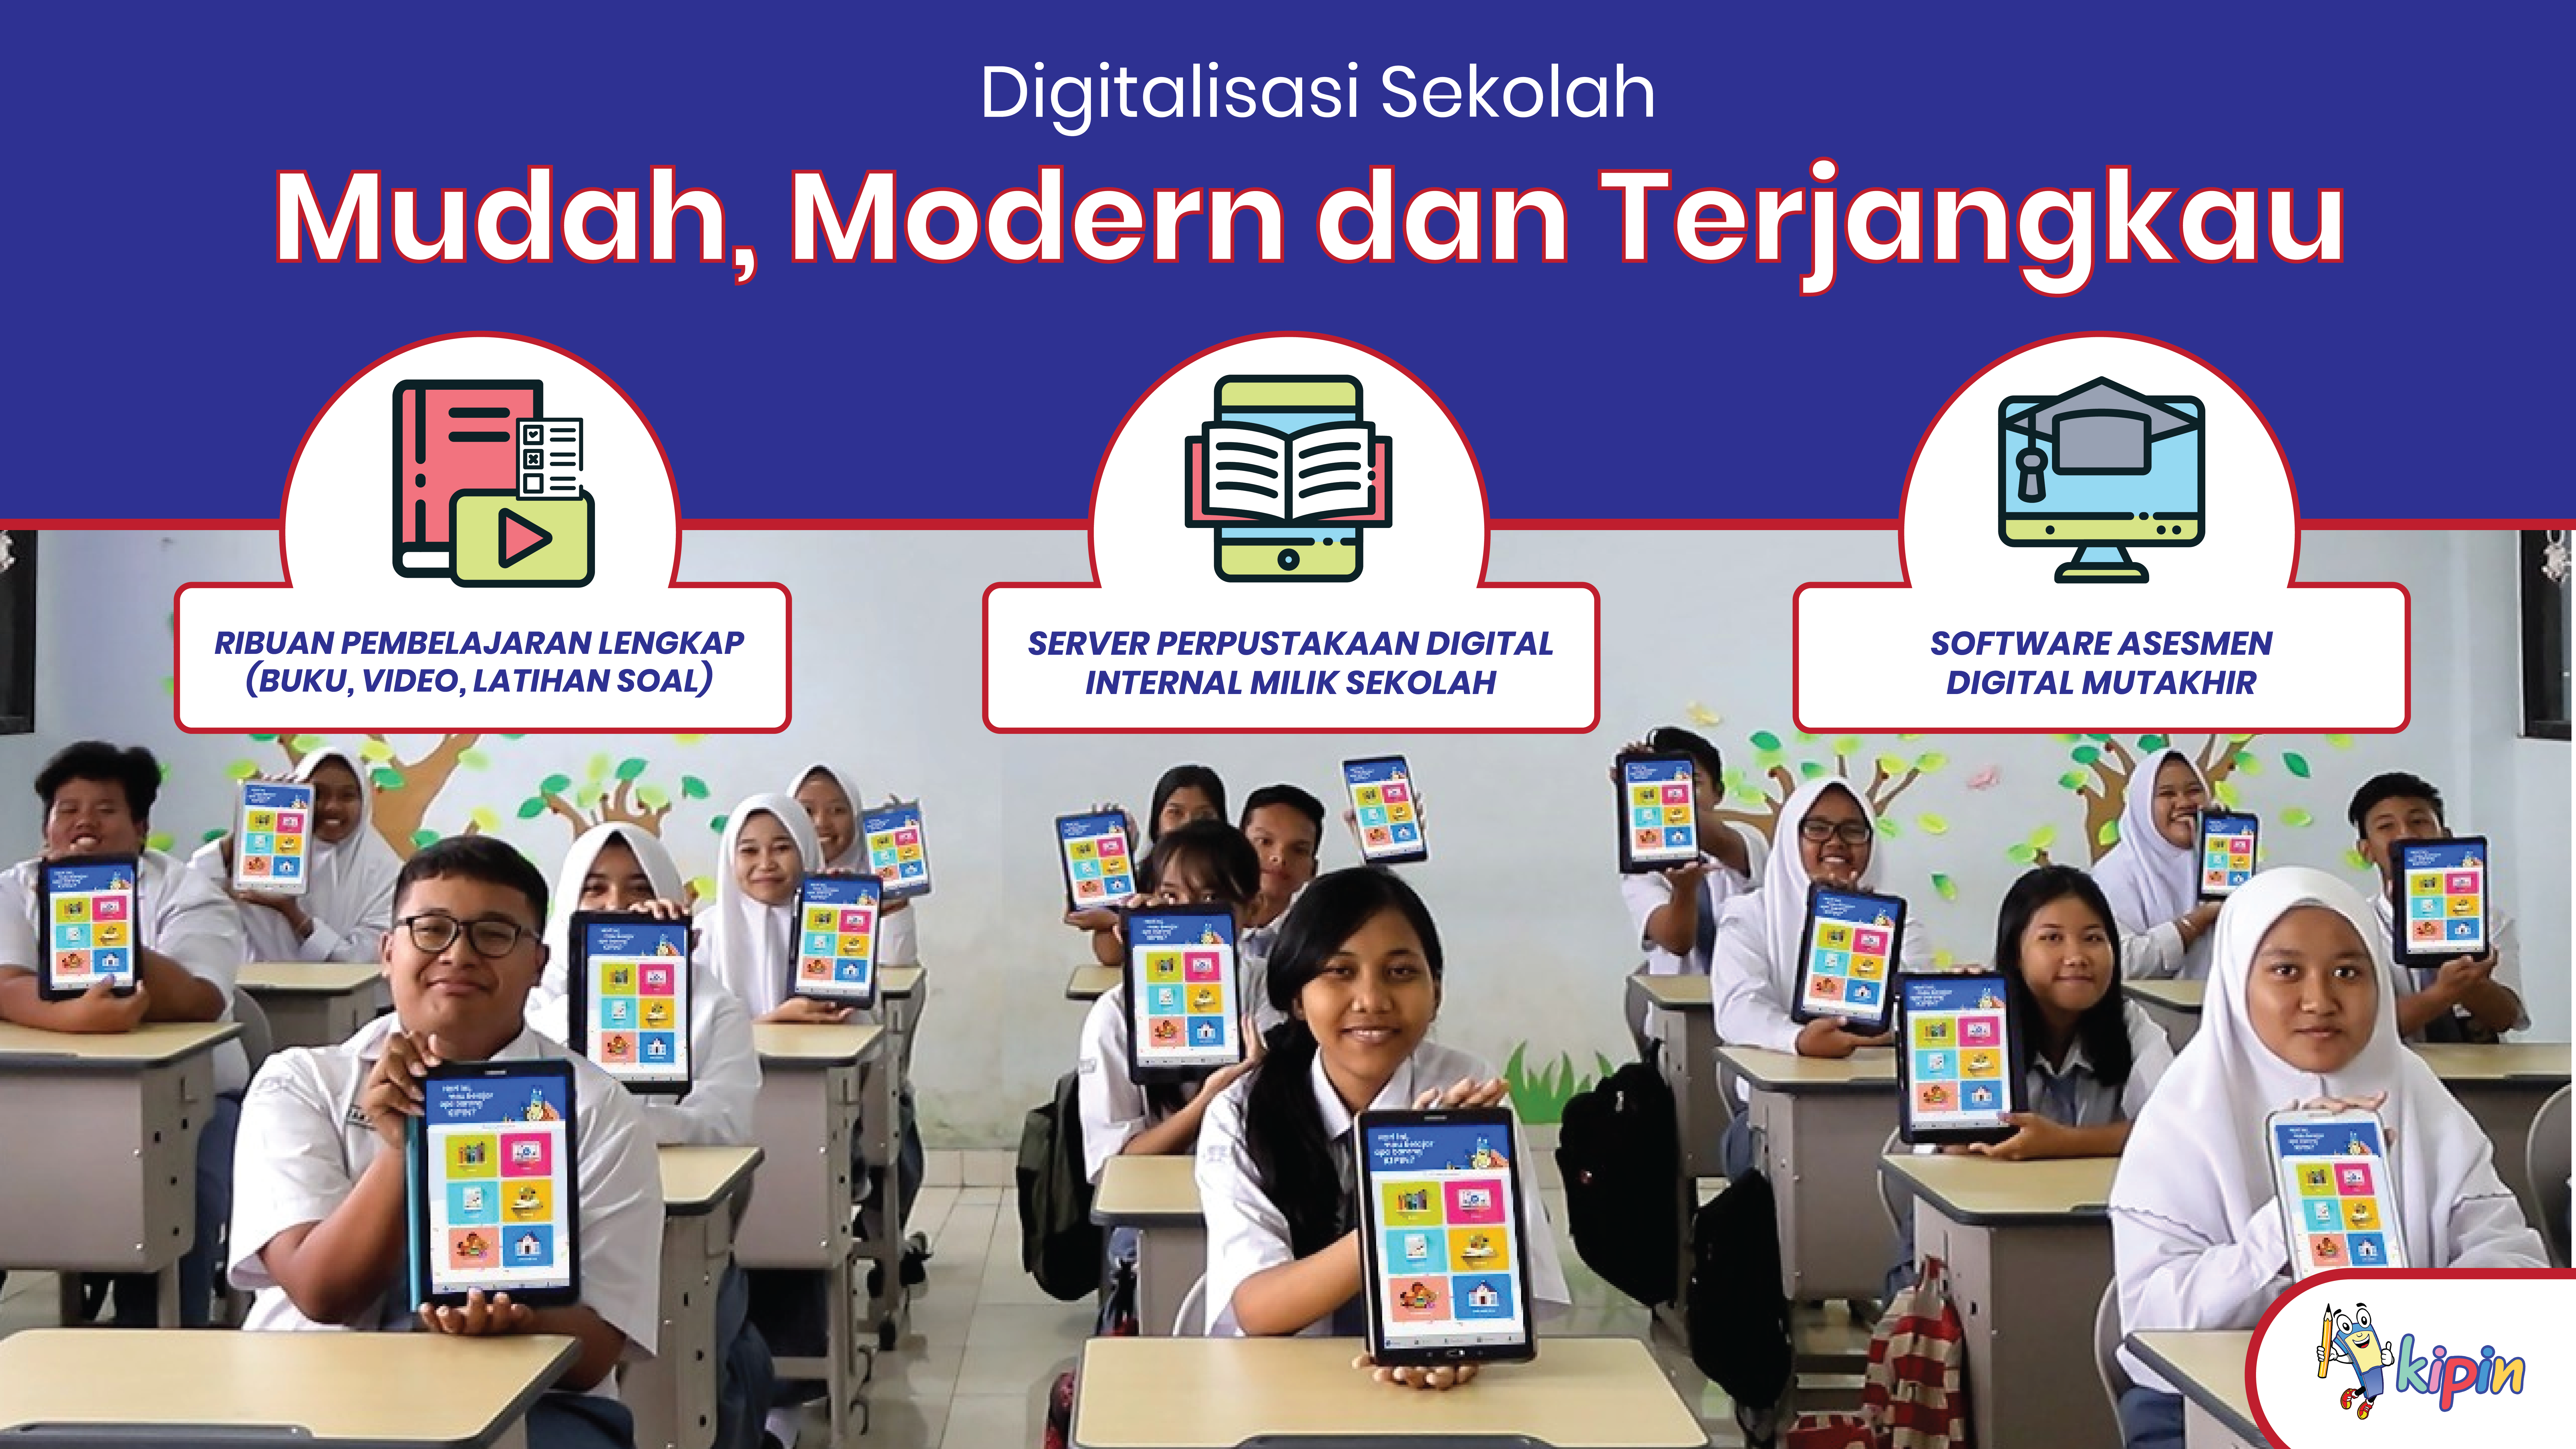 Digitalisasi Sekolah Praktis dan Instan dengan Kipin